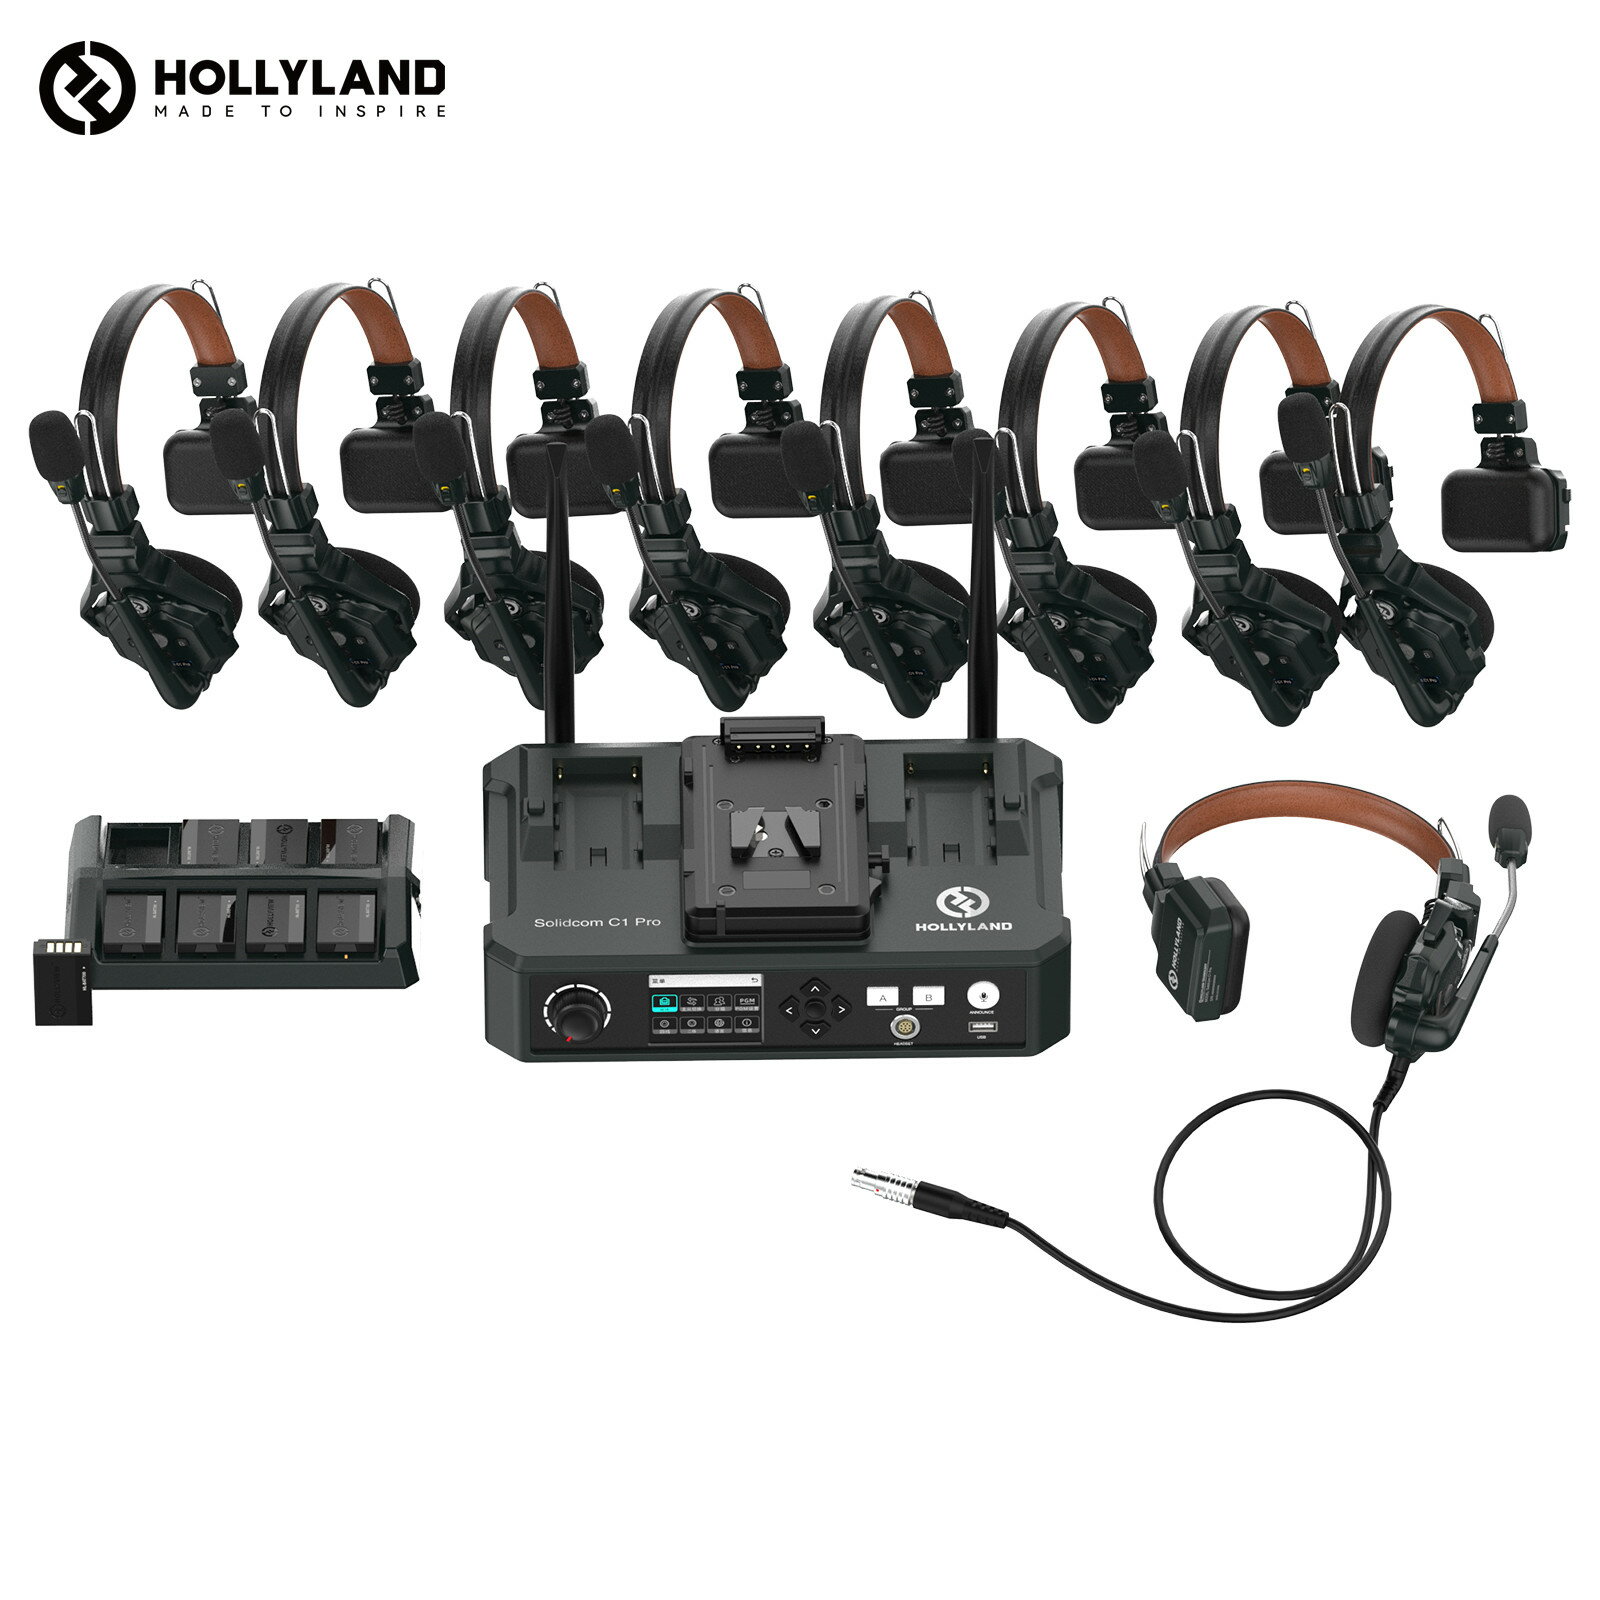 【特典付き】Hollyland Solidcom C1 Pro-HUB8S ワイヤレスインカム 9台セット ノイズキャンセリング・P..